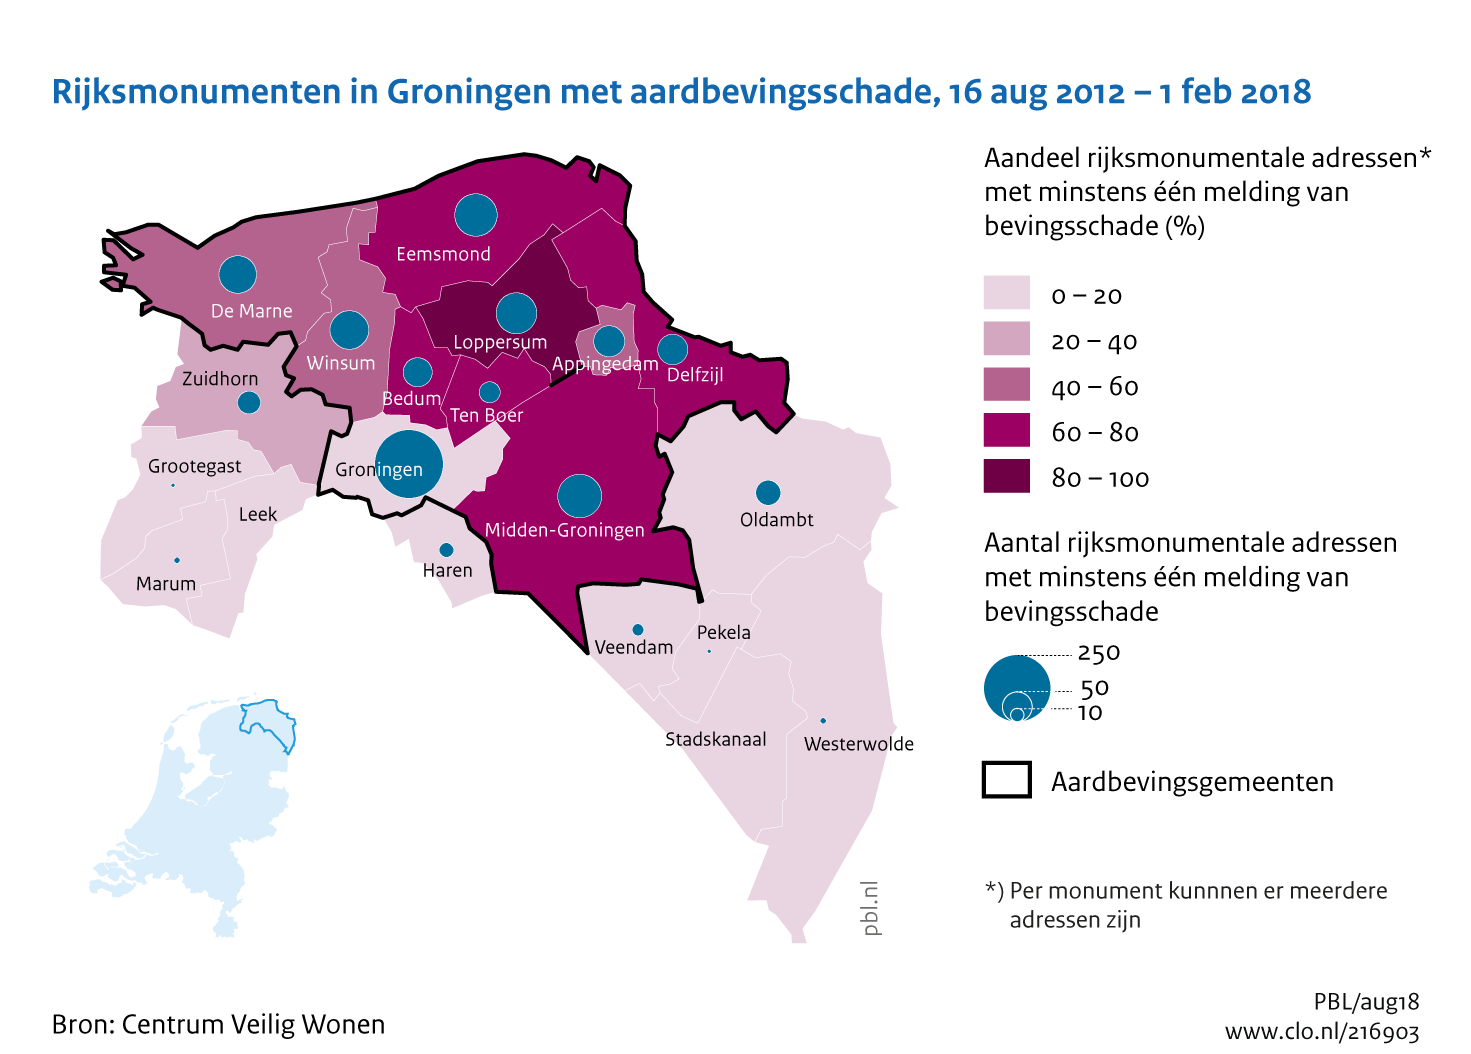 Figuur Absolute en relatieve aantallen rijksmonumenten in de provincie Groningen met aardbevingsschade, 2012-2018. In de rest van de tekst wordt deze figuur uitgebreider uitgelegd.